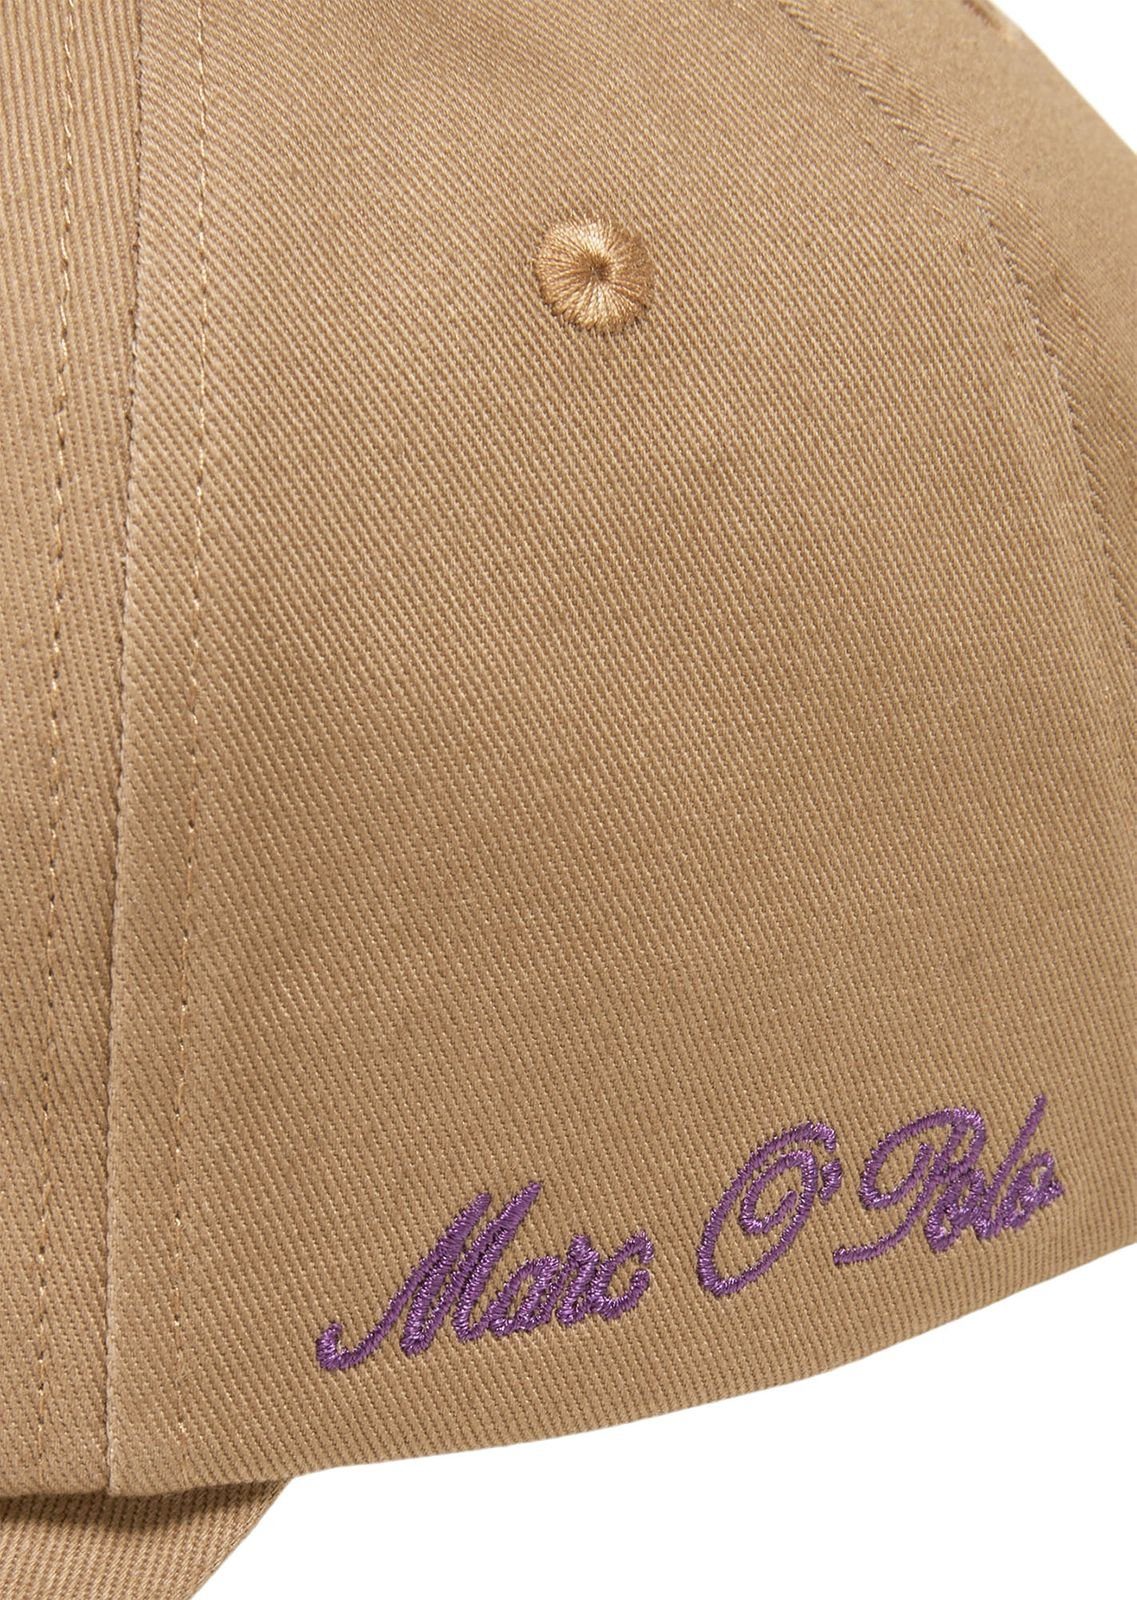 Marc O'Polo Casabella Cap Brown Baseball Embroidery